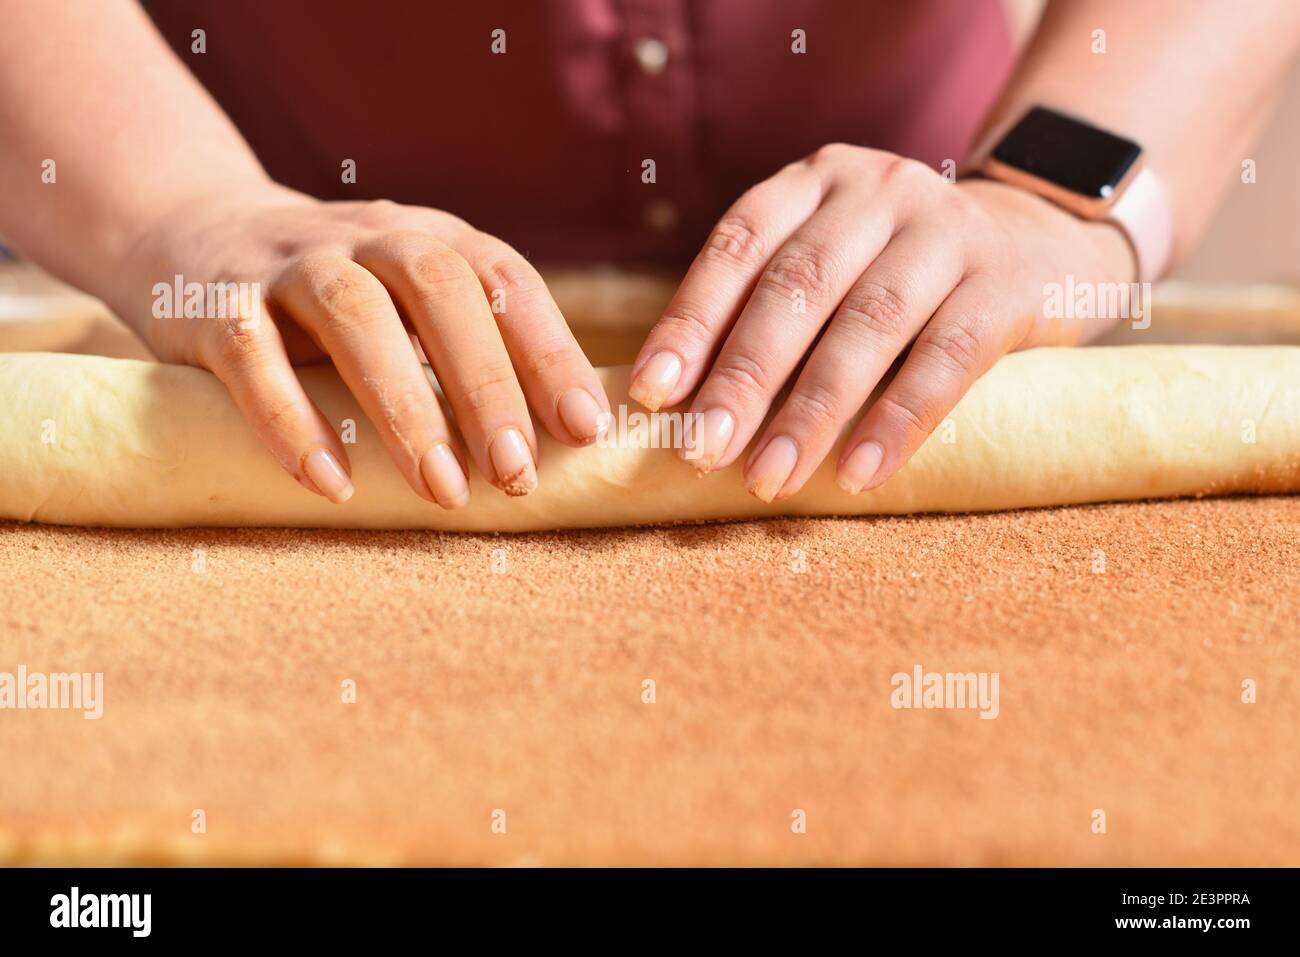 La femme de ménage fait des petits pains à la cannelle, faisant de la pâtisserie maison Banque D'Images